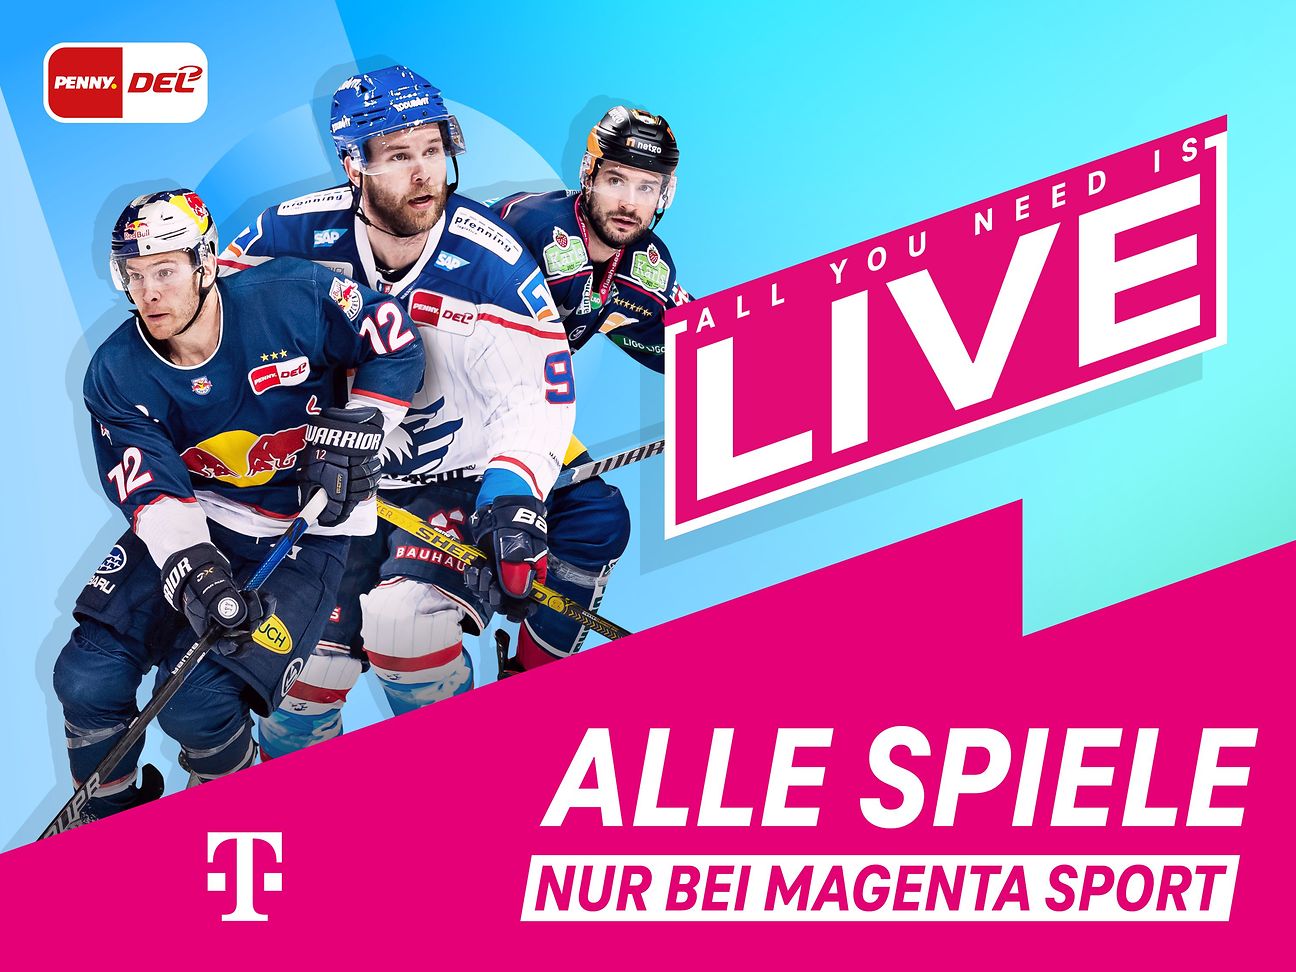 MagentaSport Größtes Eishockey Liveangebot wächst weiter Deutsche Telekom